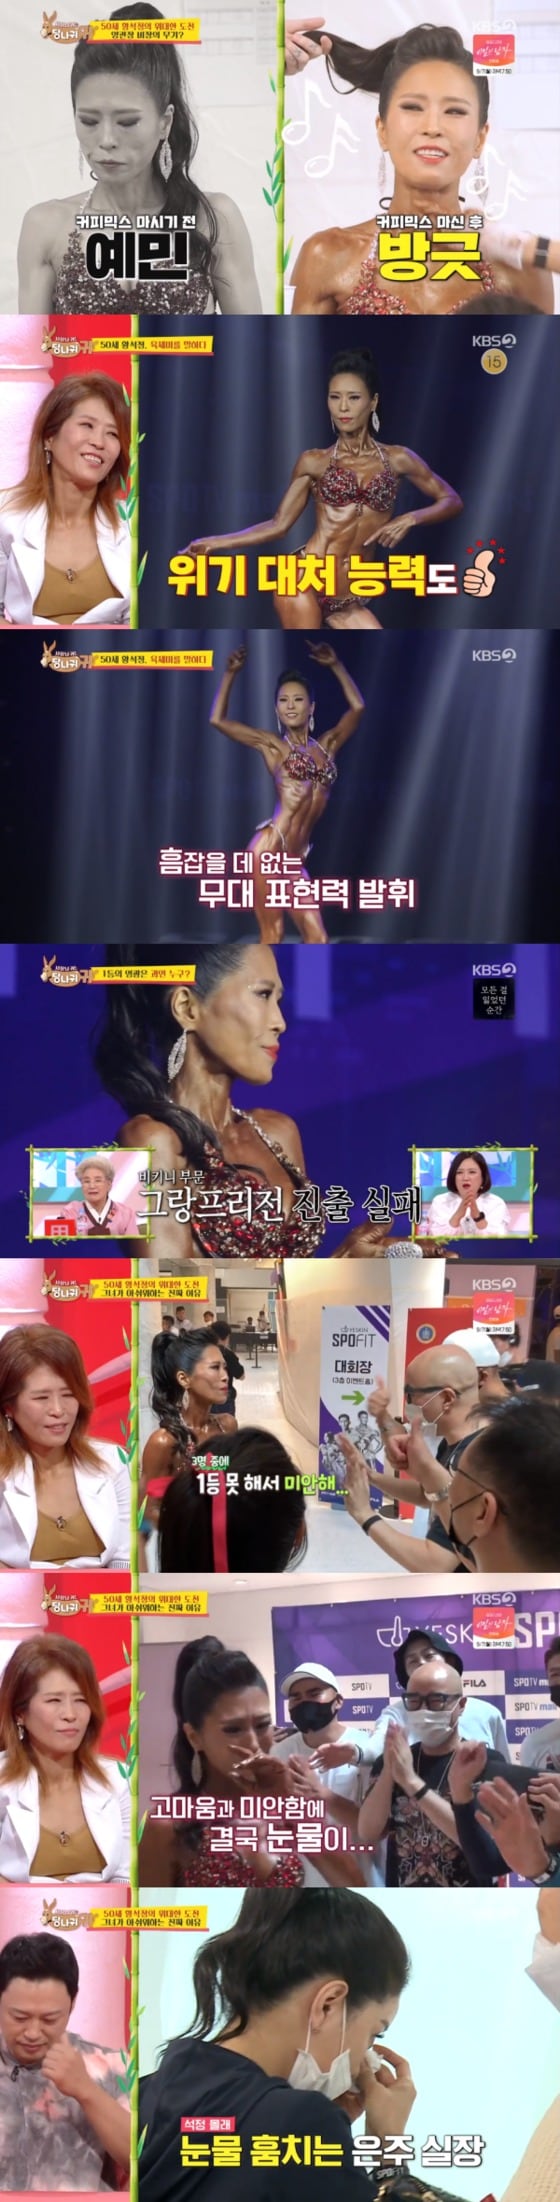 KBS 2TV '사장님 귀는 당나귀 귀'© 뉴스1